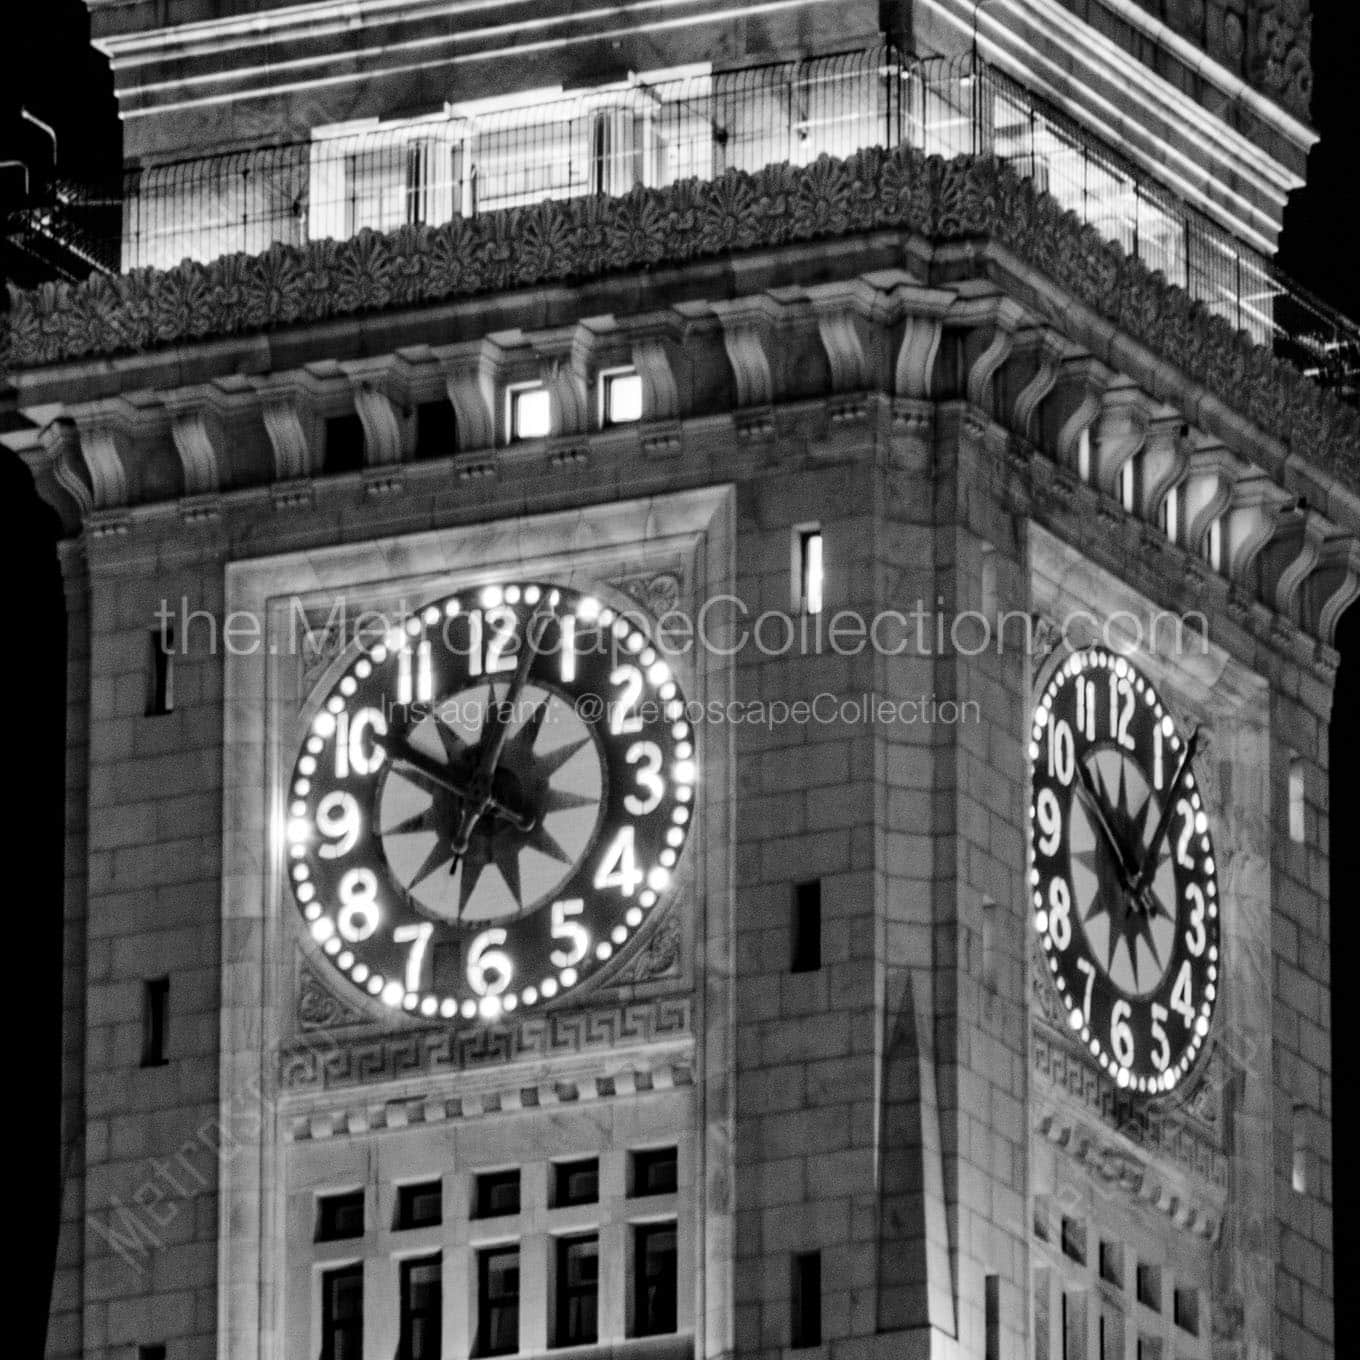 custom house tower clock face Black & White Office Art